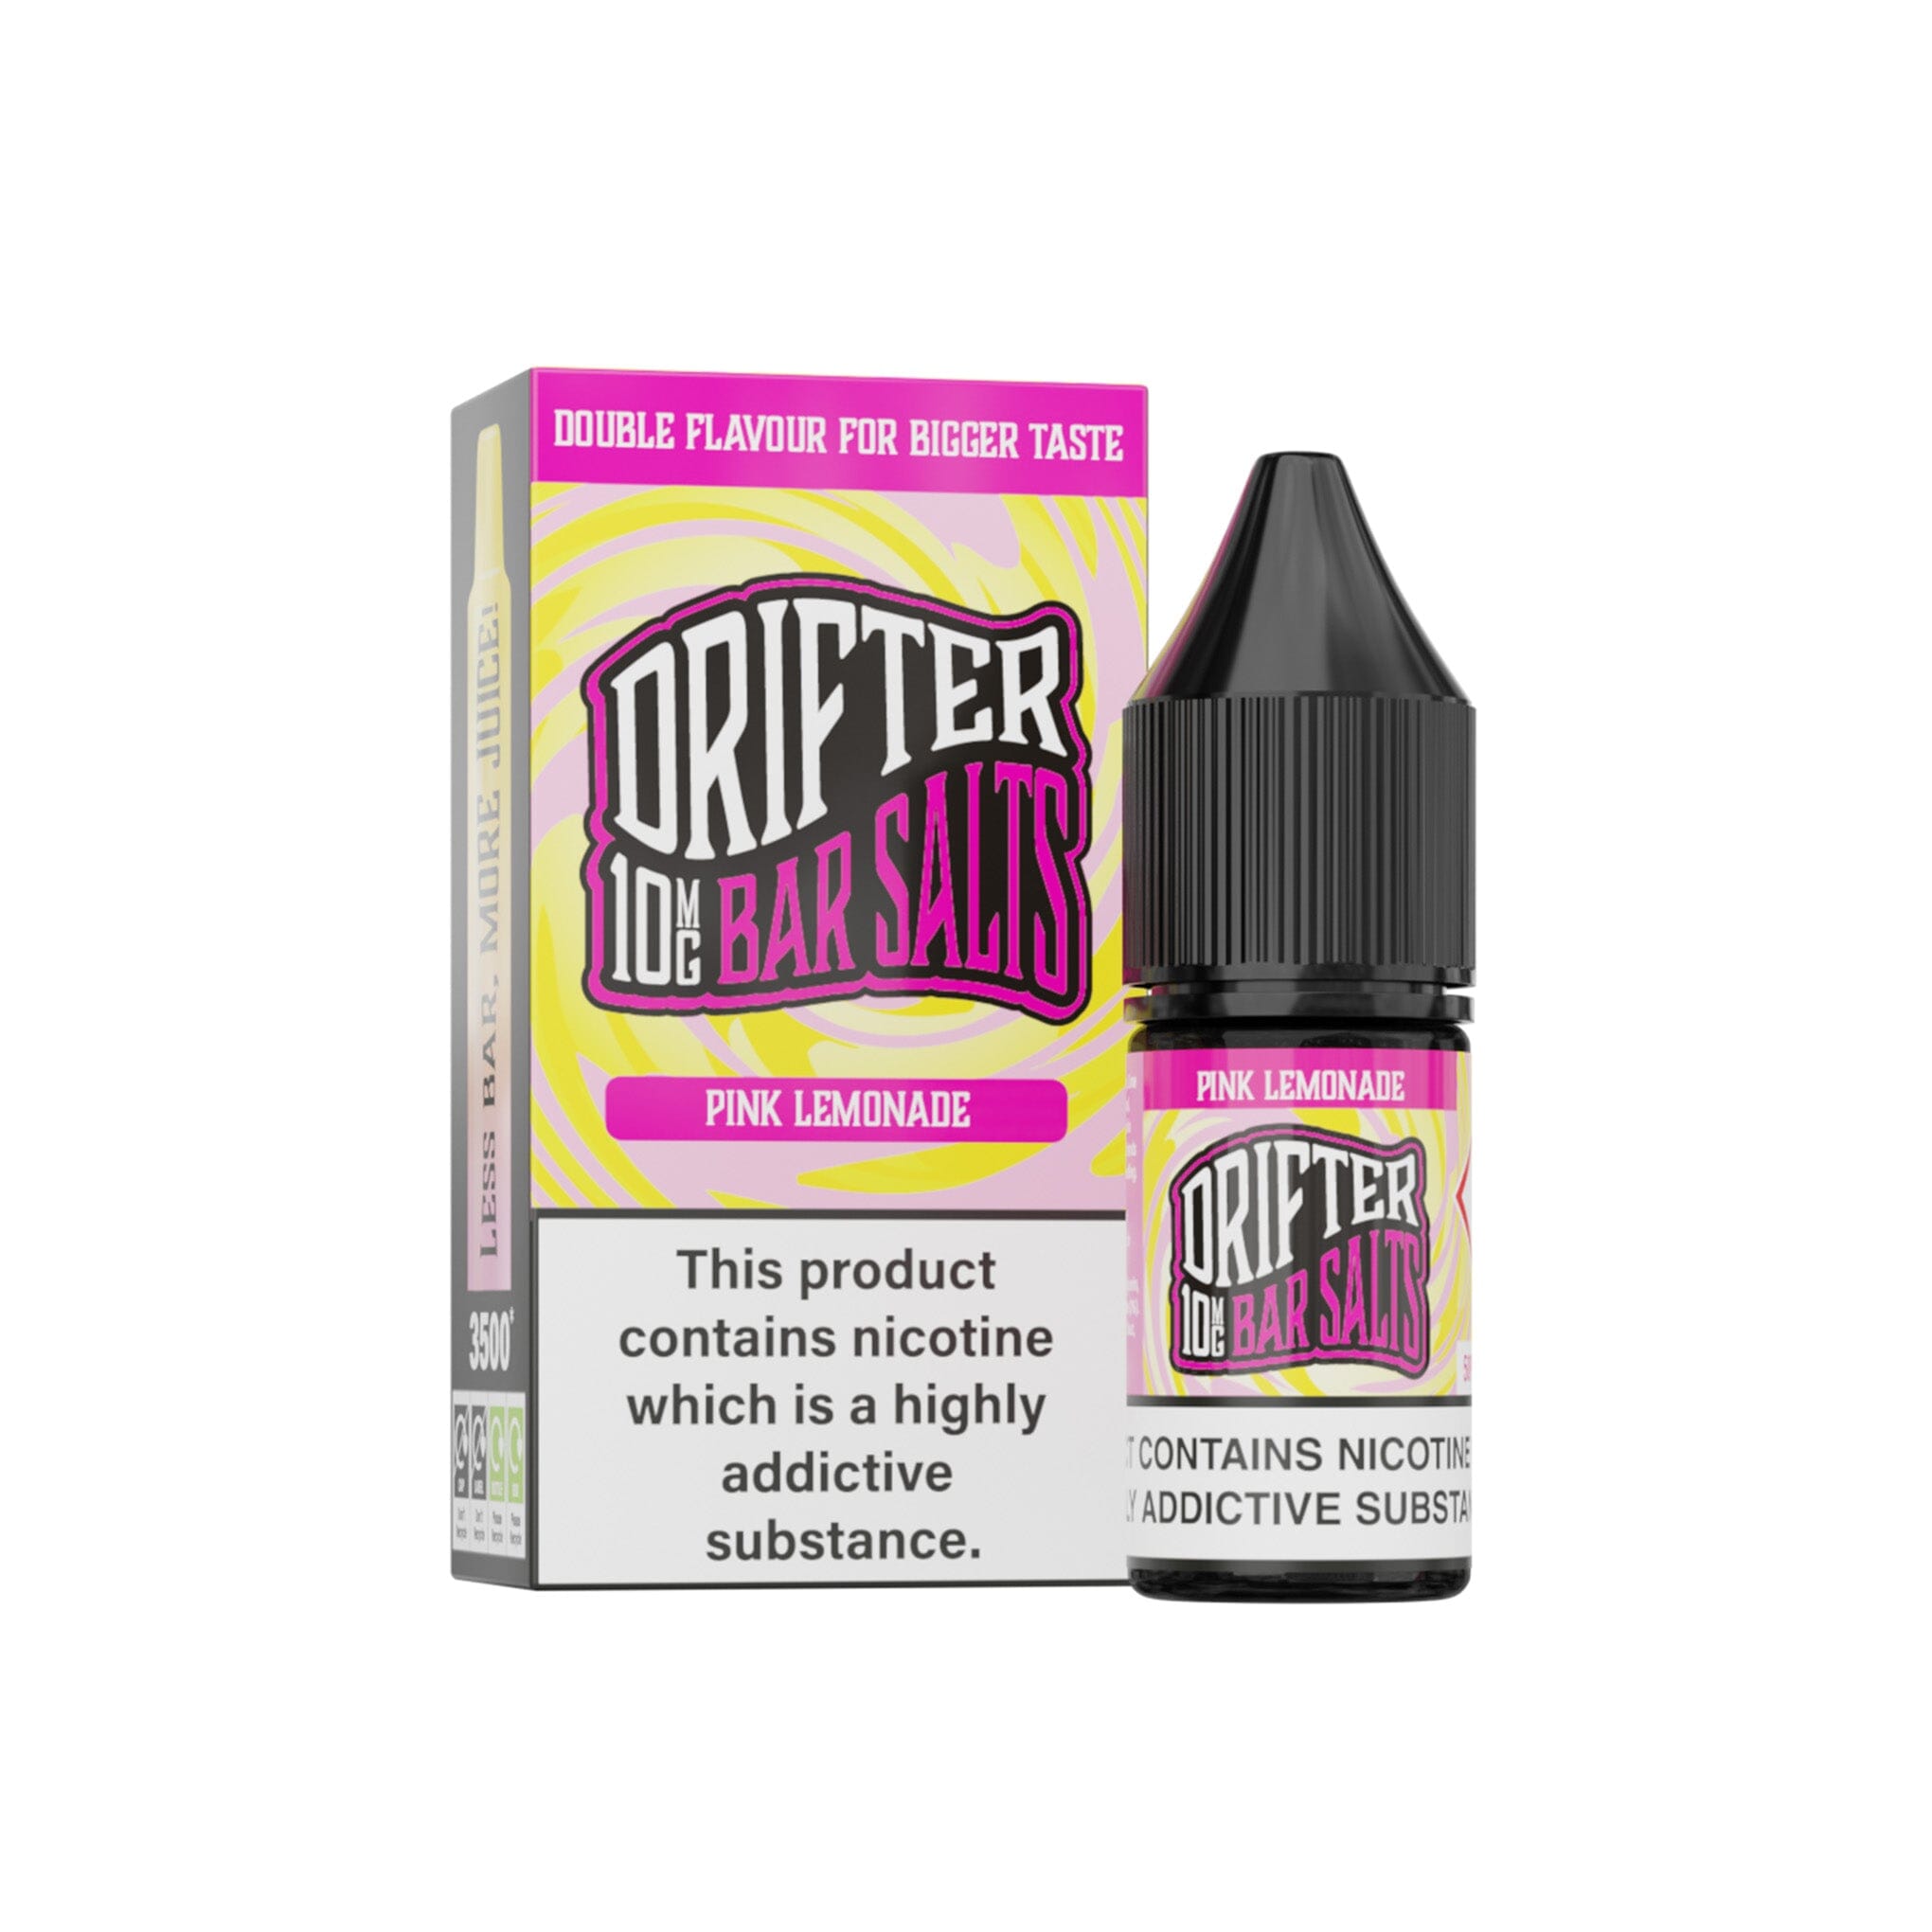 Drifter Bar Salt E-Liquid Pink Lemonade 20MG - High Nicotine 